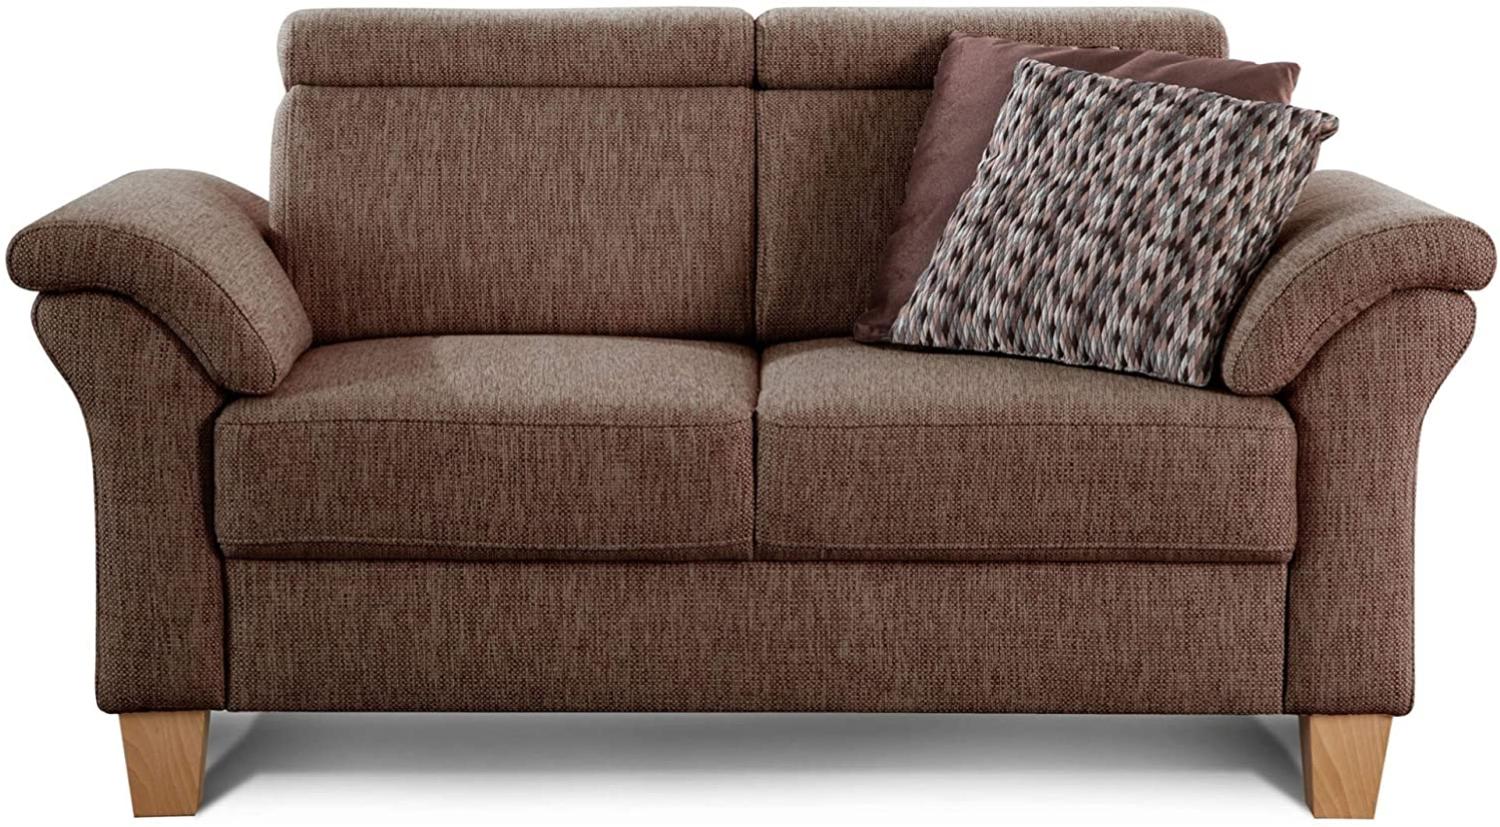 Cavadore 2-Sitzer Sofa Ammerland / Couch mit Federkern im Landhausstil / Inkl. verstellbaren Kopfstützen / 156 x 84 x 93 / Strukturstoff braun Bild 1